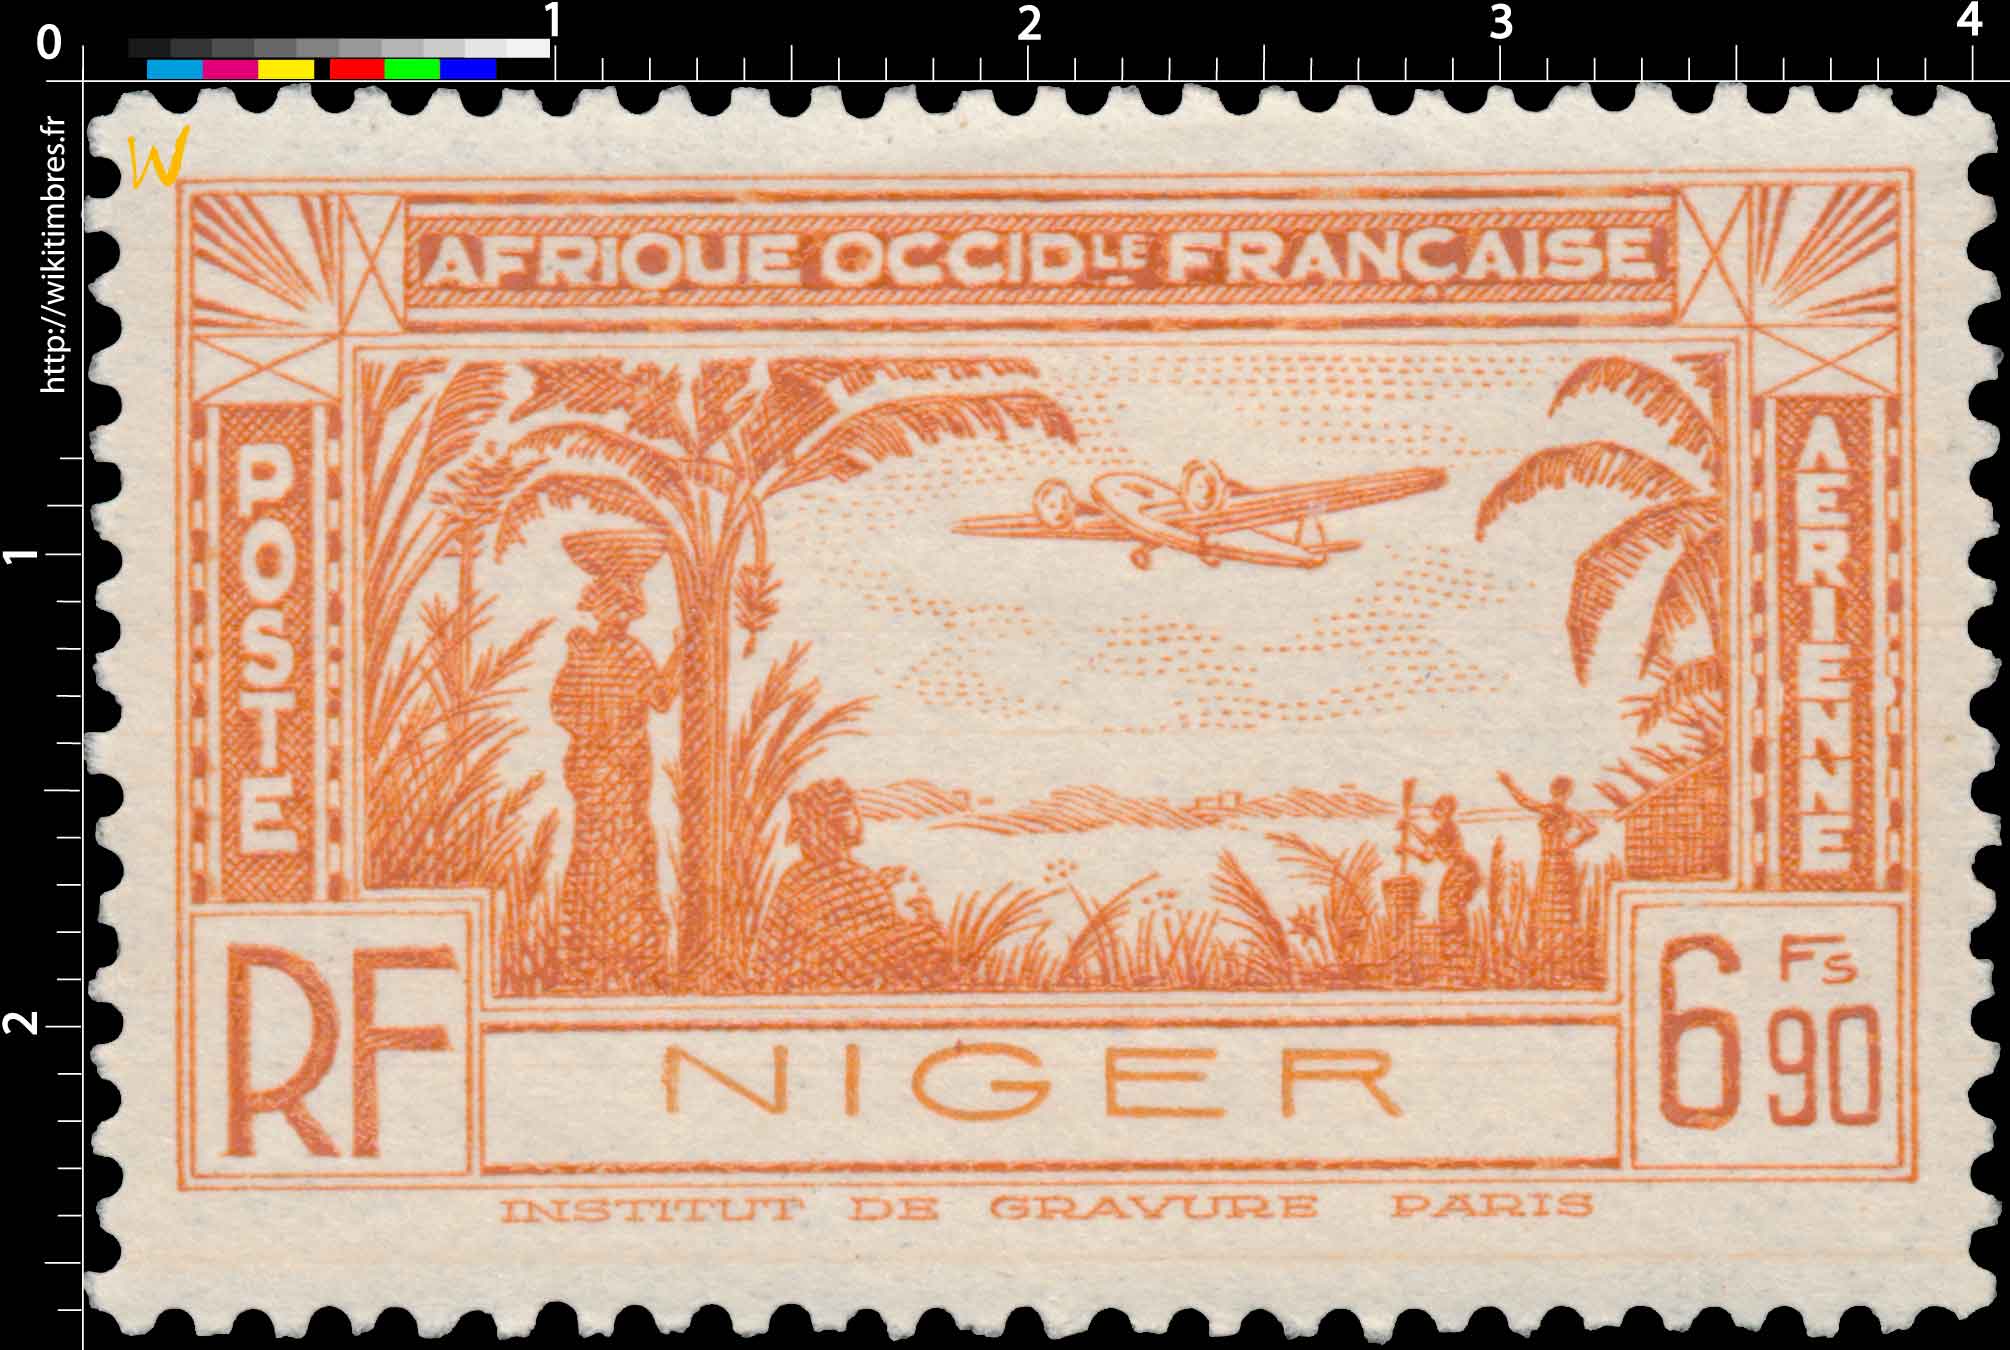 Niger - Avion et paysage